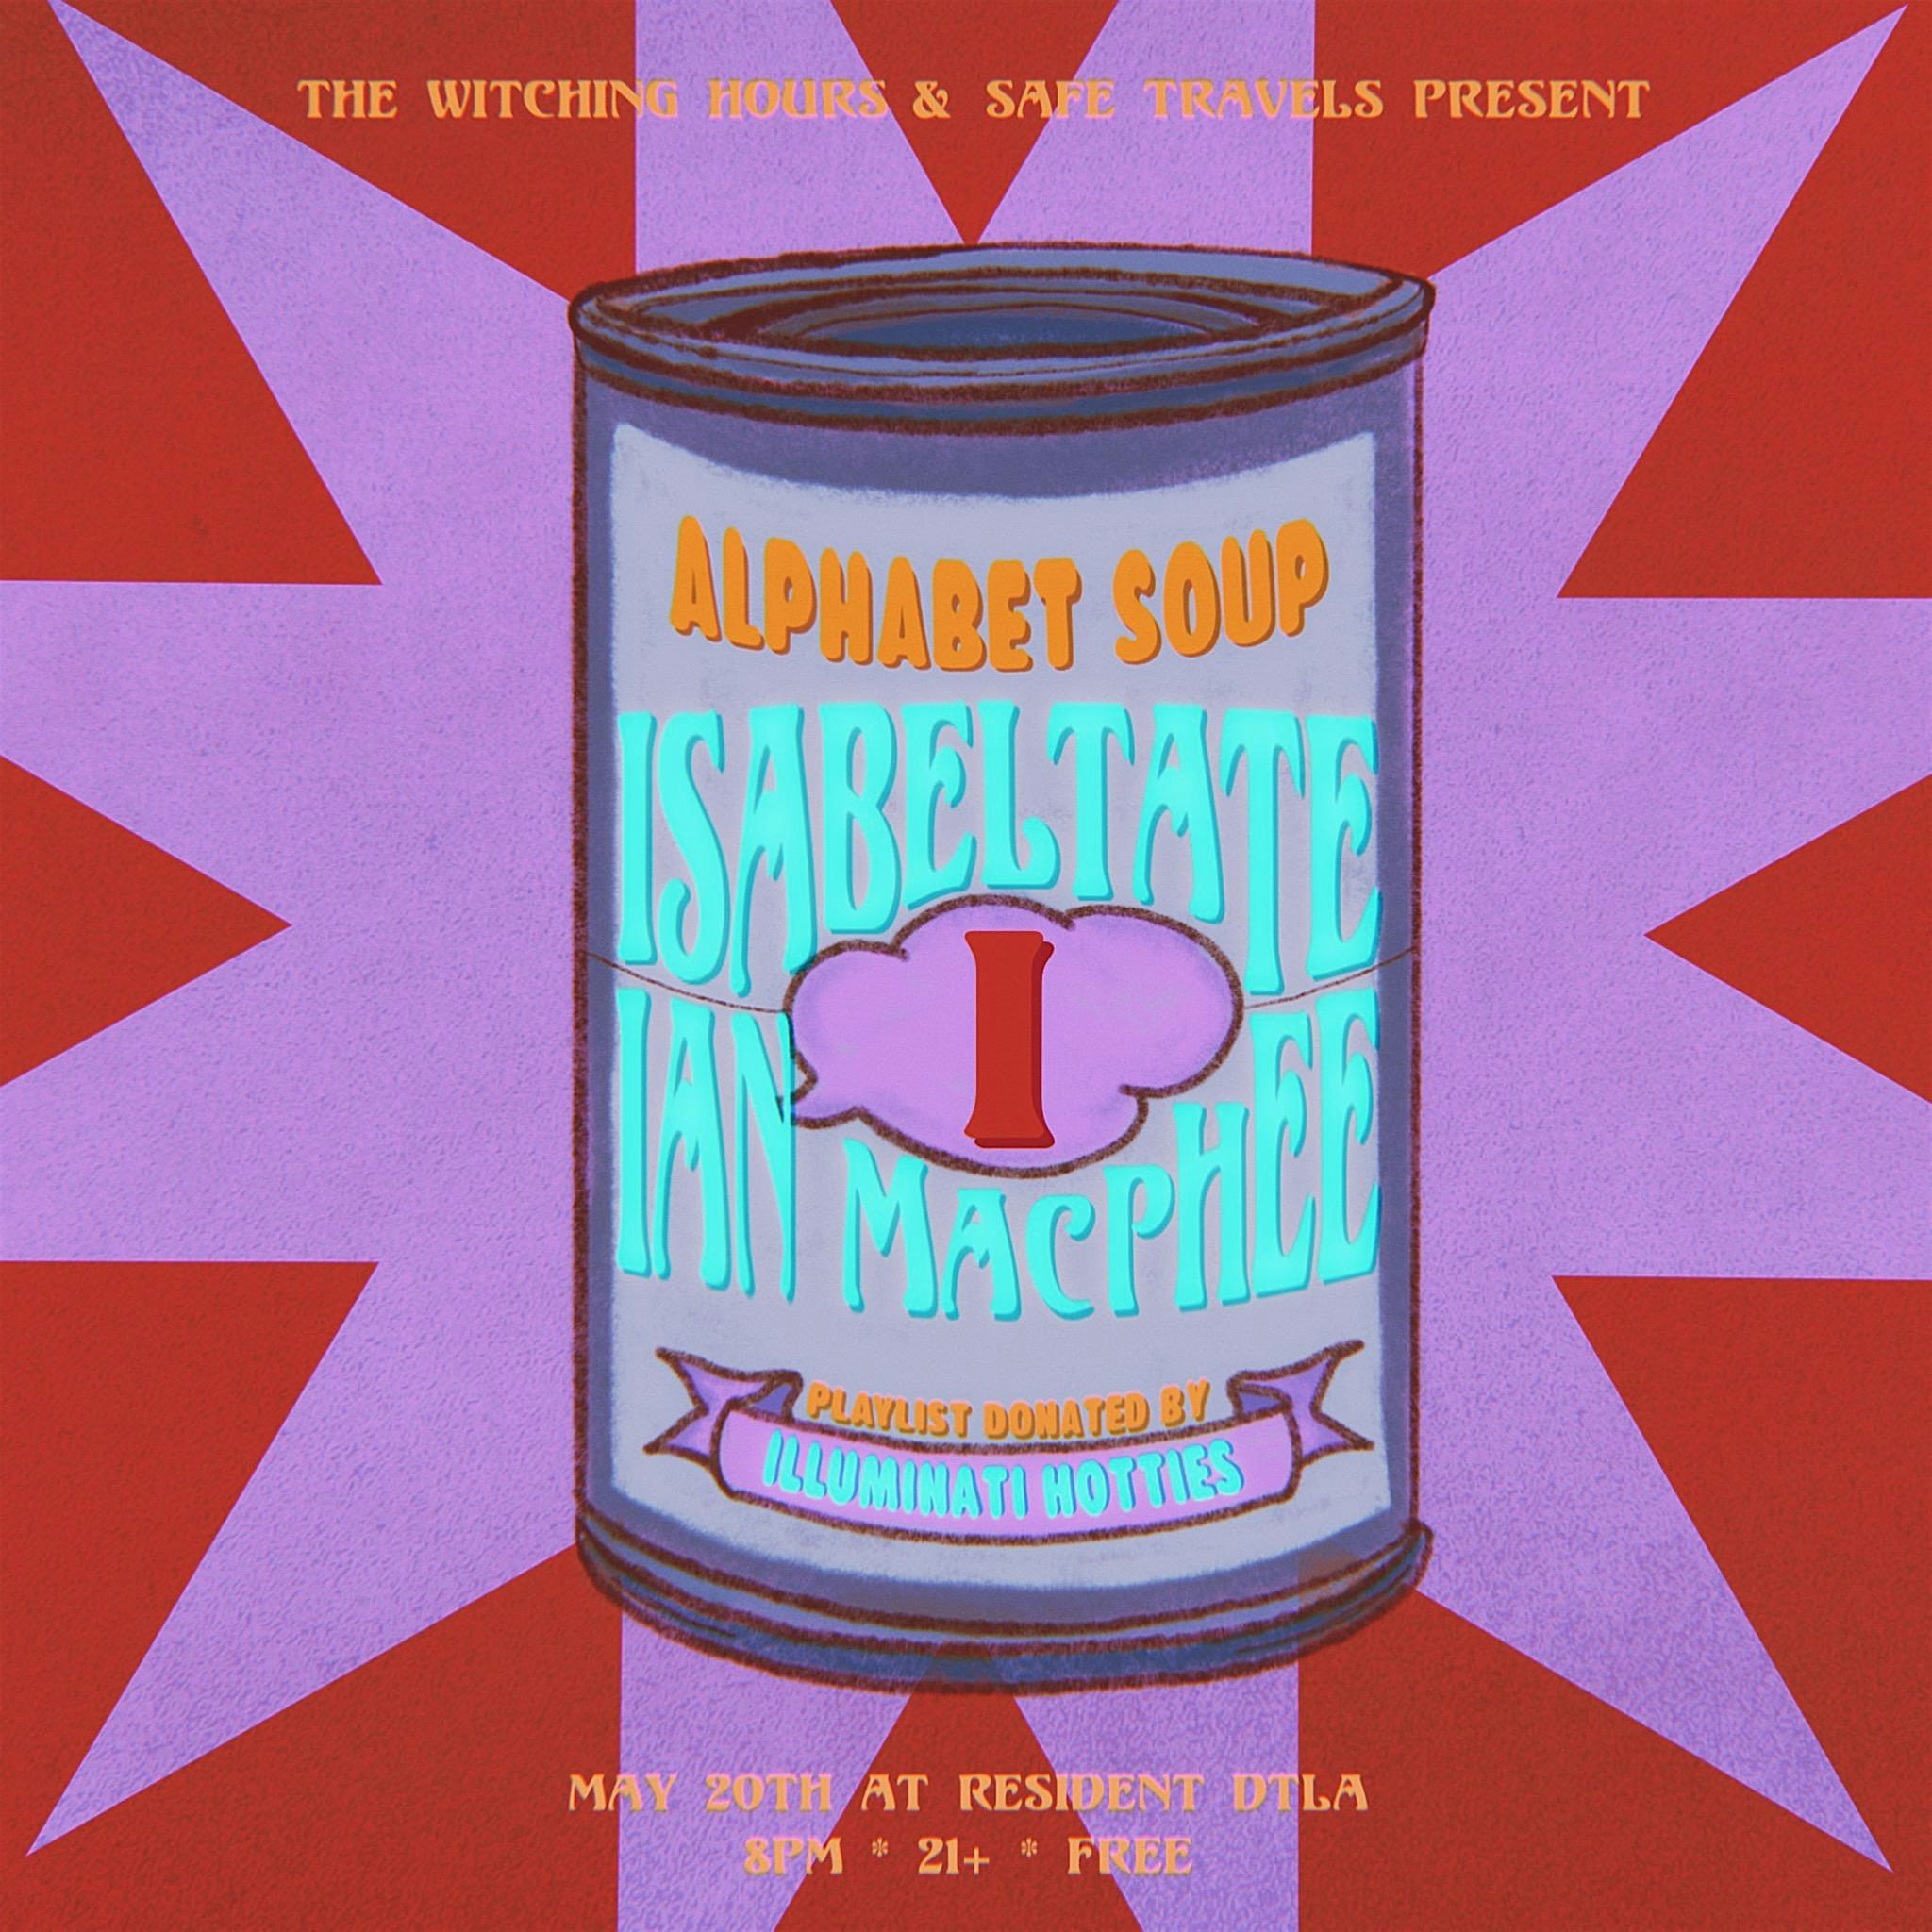 Alphabet Soup: isabeltate, Ian MacPhee & Illuminati Hotties (Playlist)